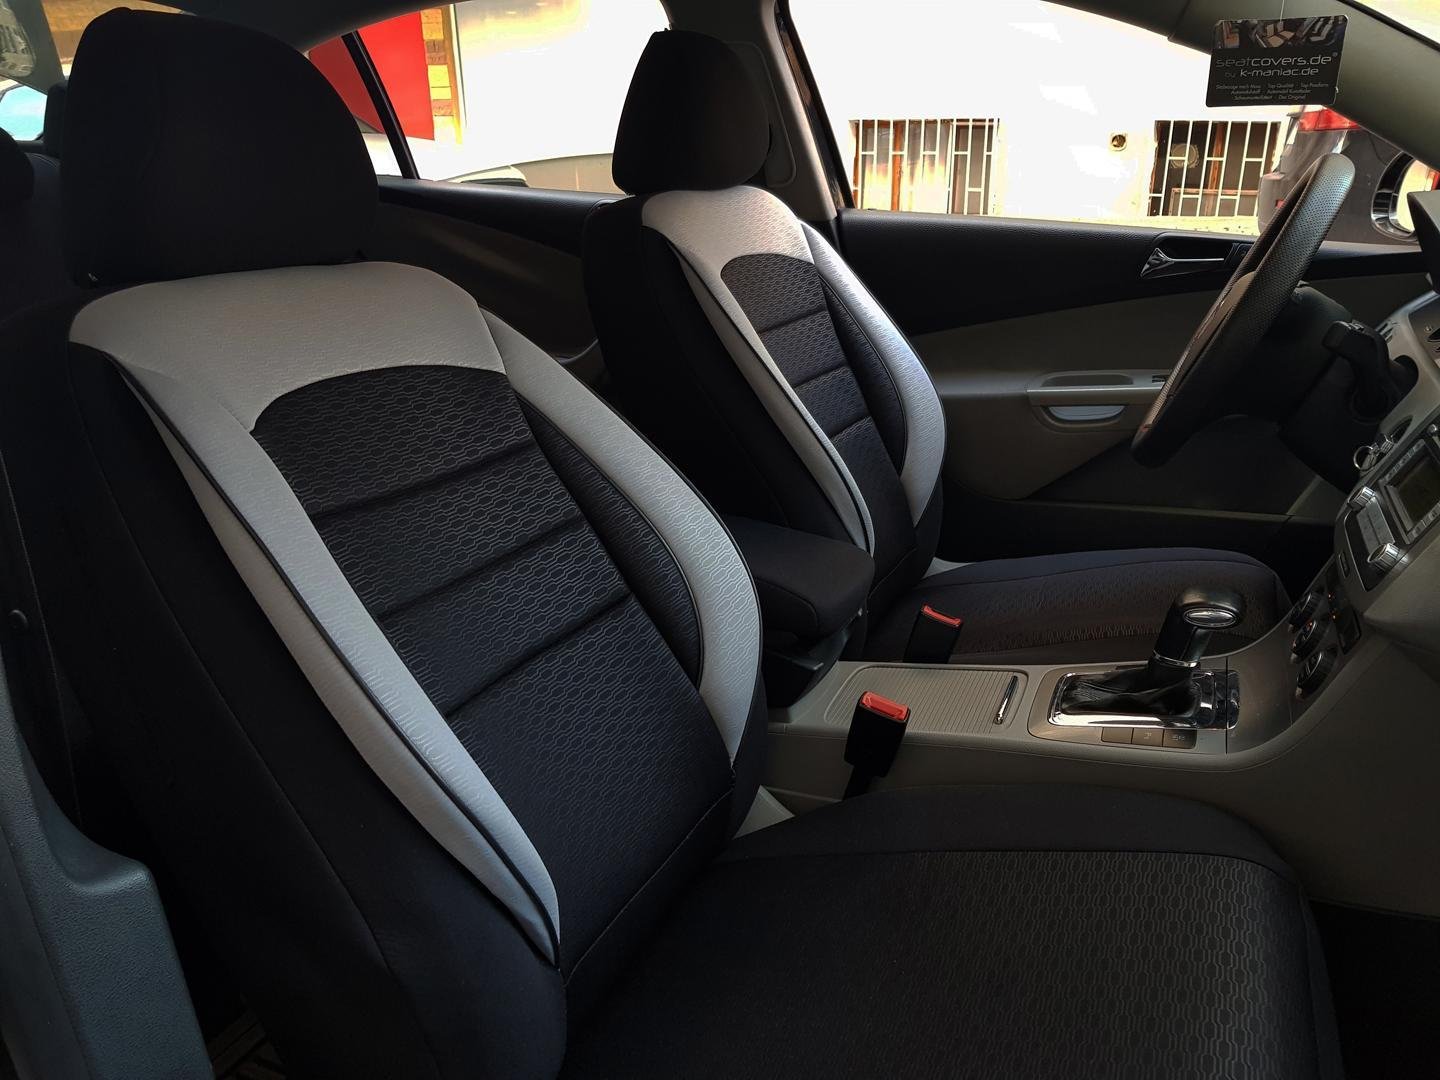 Car Seat Covers Protectors Honda Cr V Iii Black Grey V11 Front Seats - Black Car Seat Covers For Honda Crv